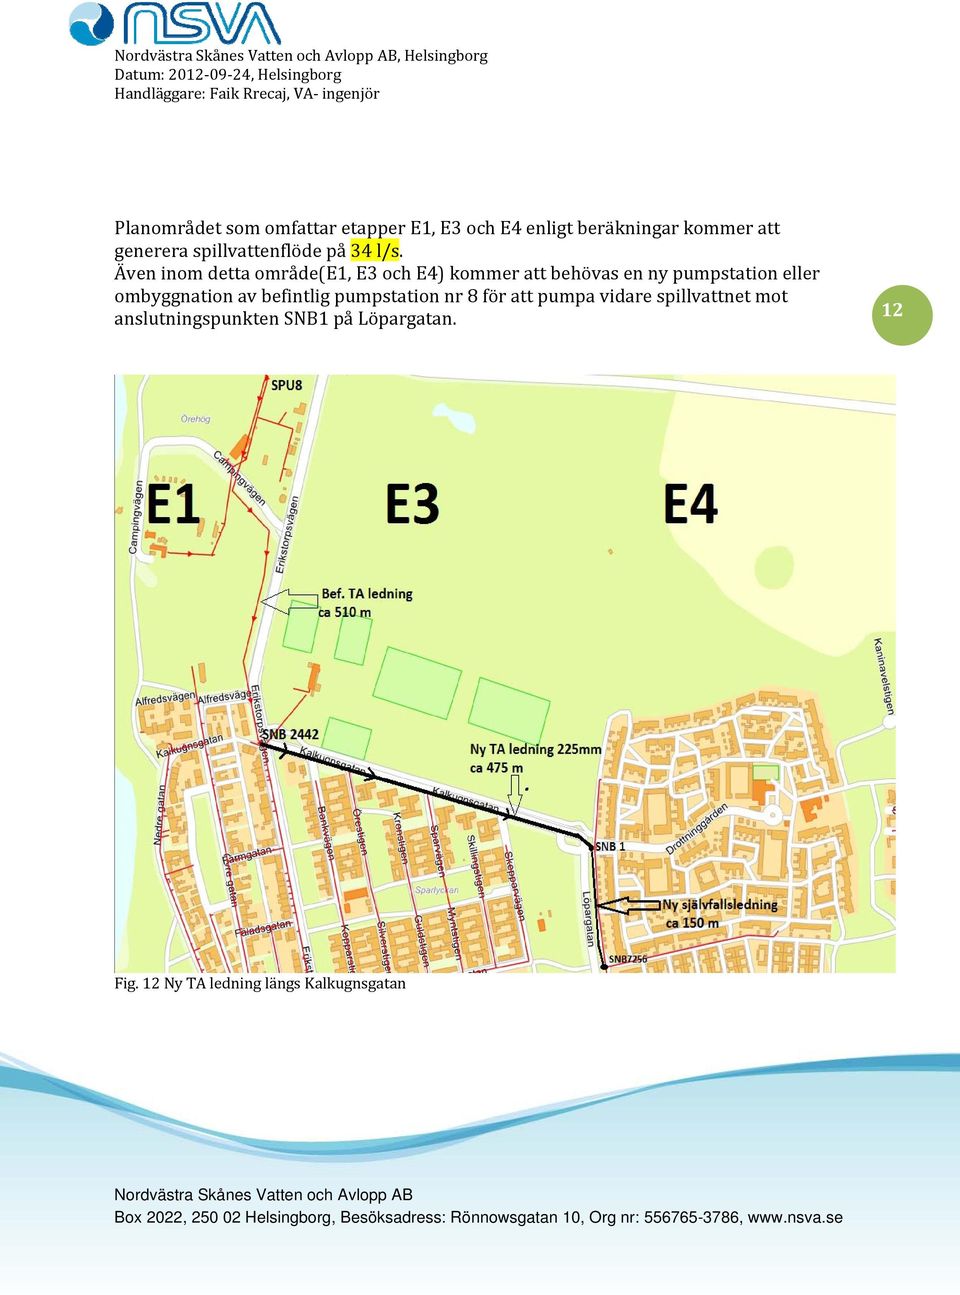 Även inom detta område(e1, E3 och E4) kommer att behövas en ny pumpstation eller ombyggnation